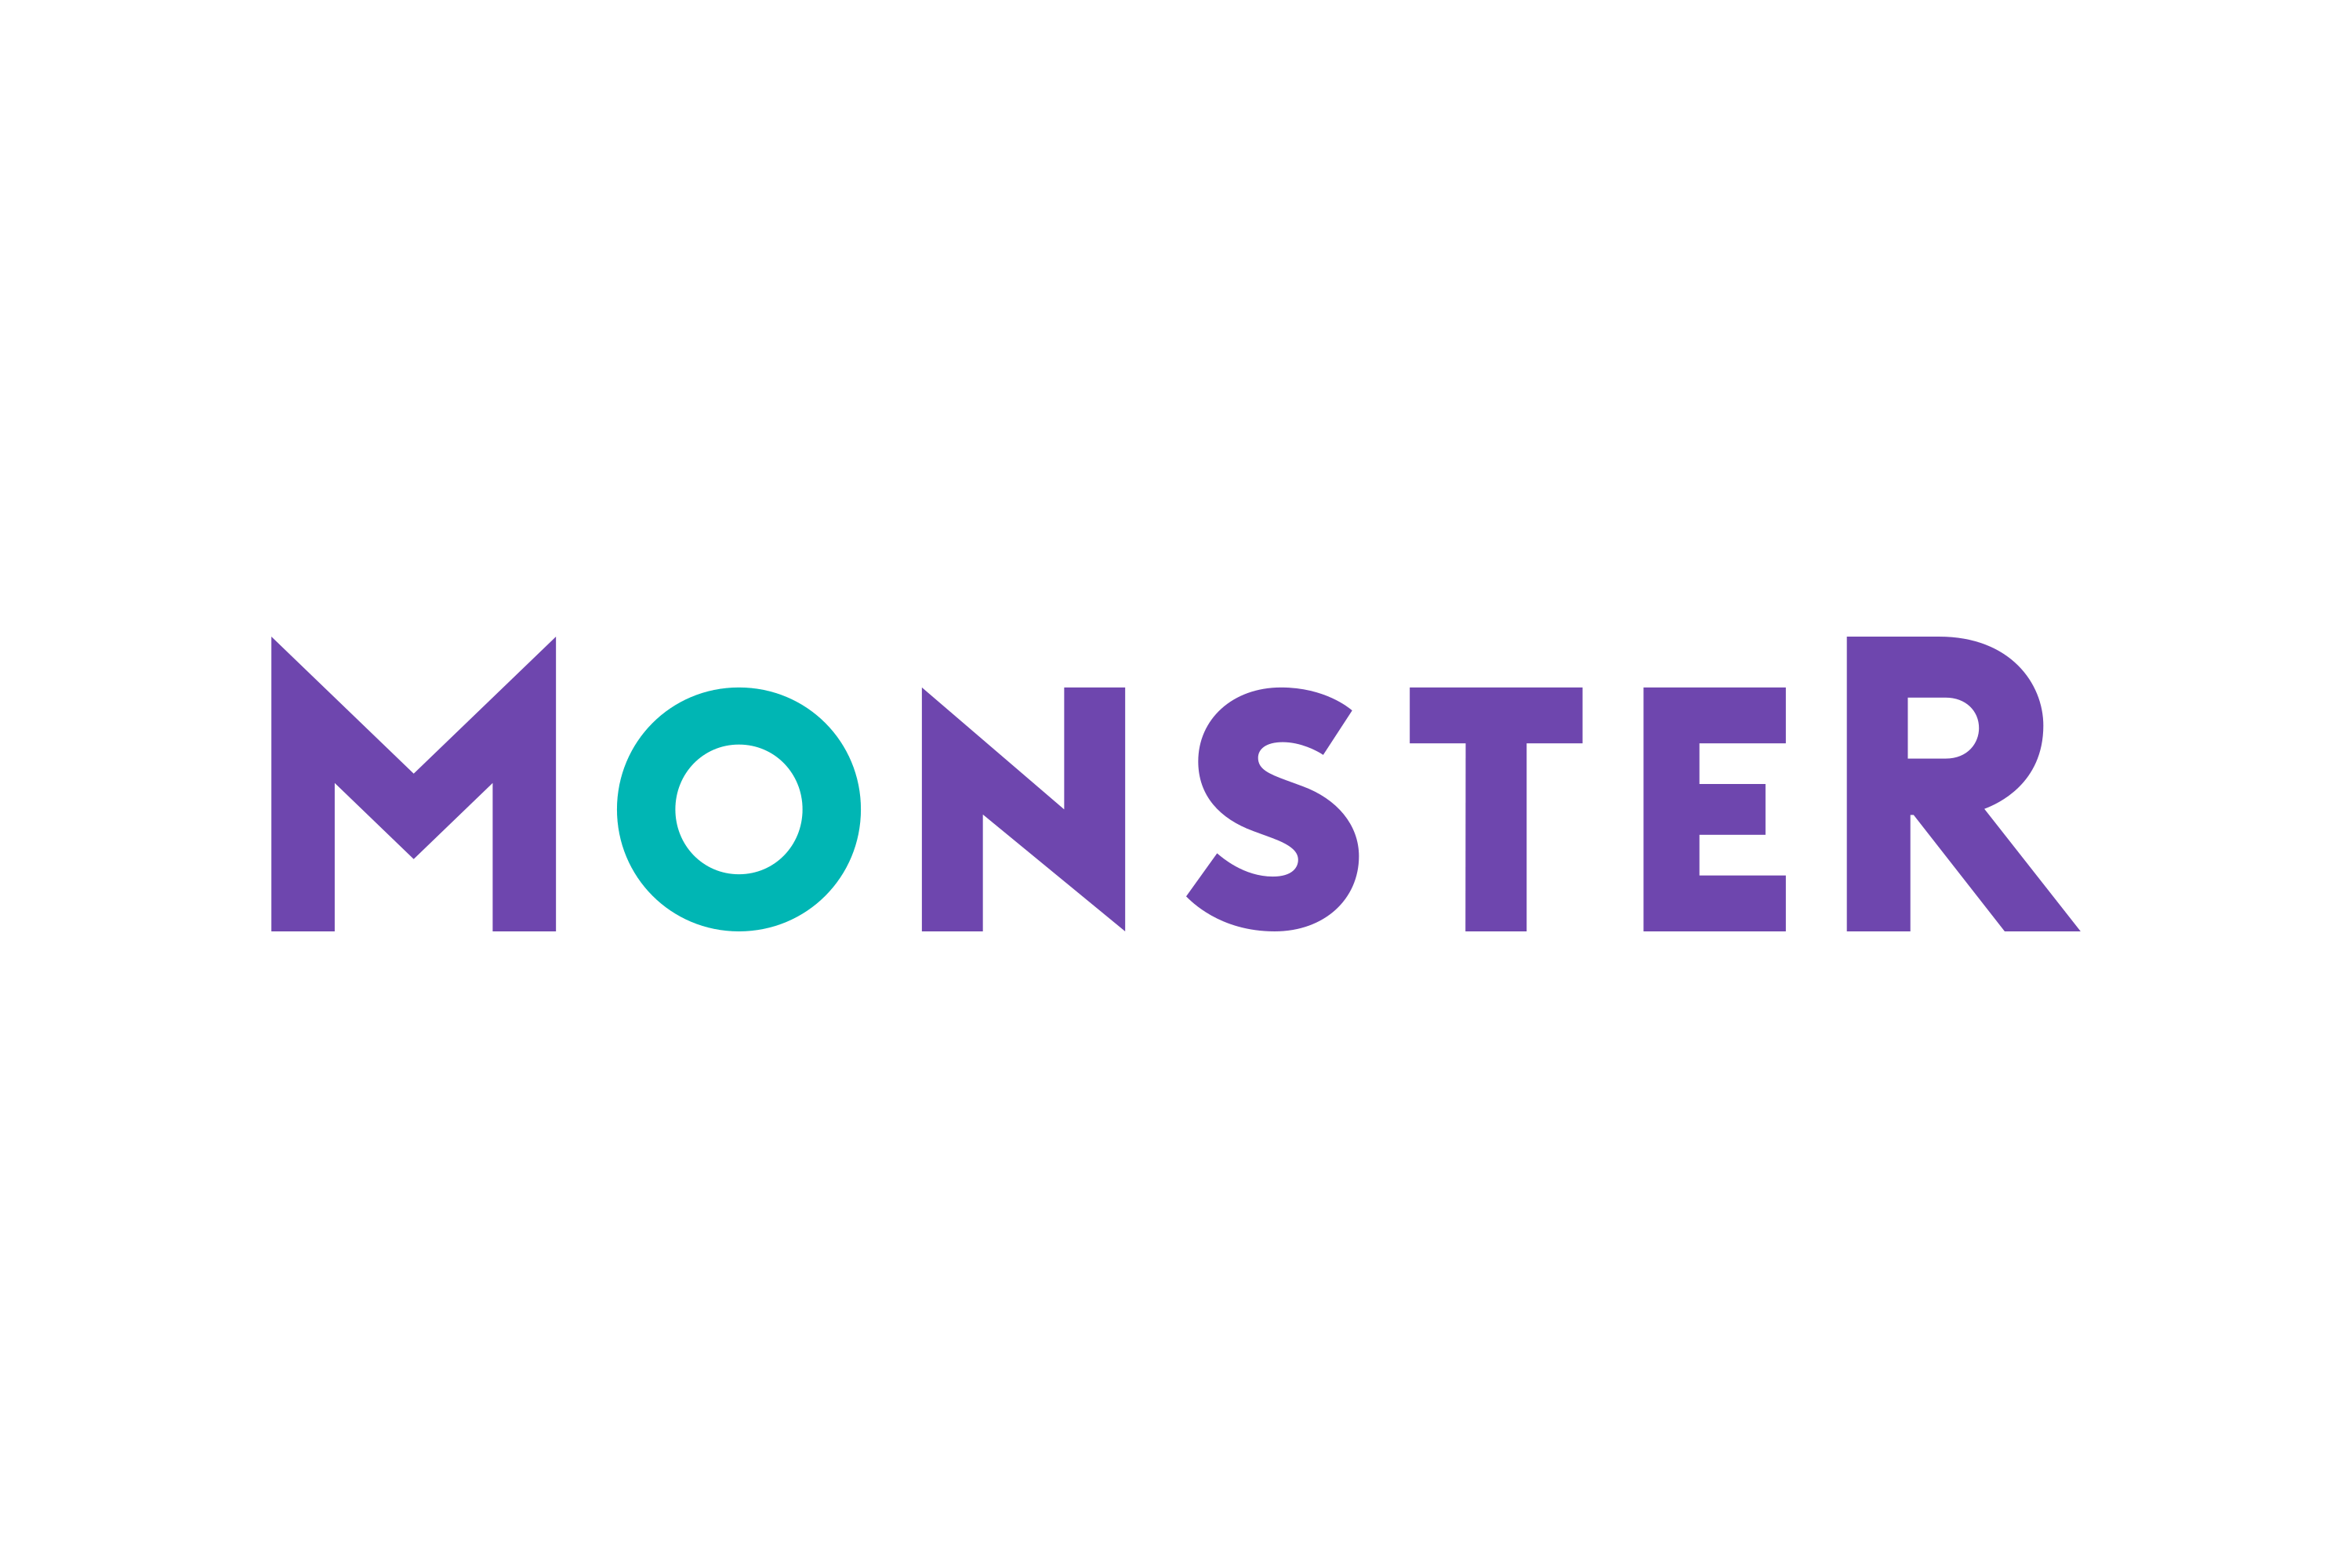 Download Monster Worldwide Logo in SVG Vector or PNG File Format - Logo